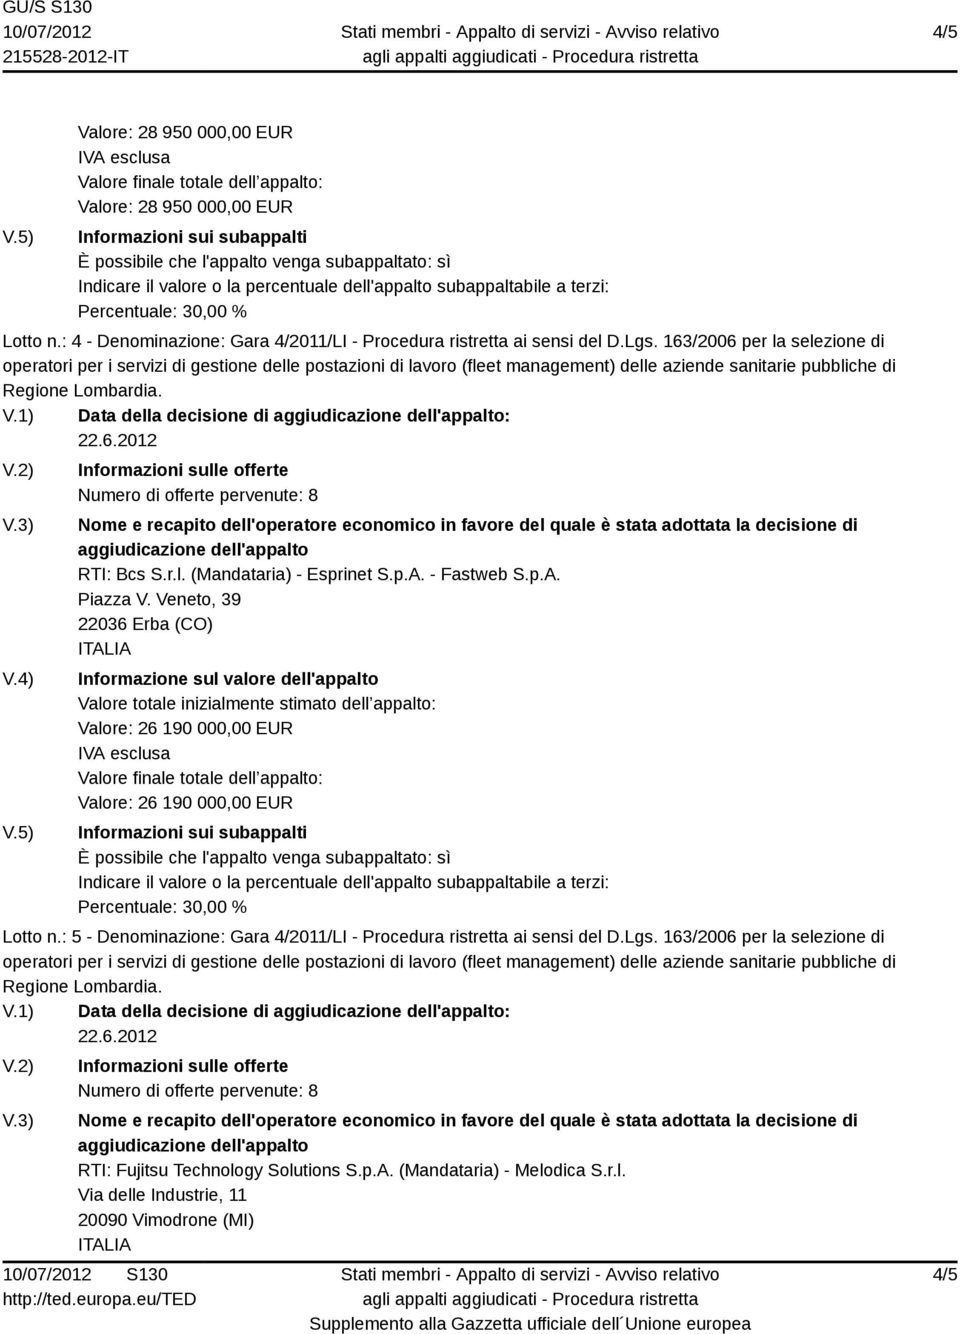 Veneto, 39 22036 Erba (CO) Valore: 26 190 000,00 EUR Valore: 26 190 000,00 EUR Lotto n.: 5 - Denominazione: Gara 4/2011/LI - Procedura ristretta ai sensi del D.Lgs.